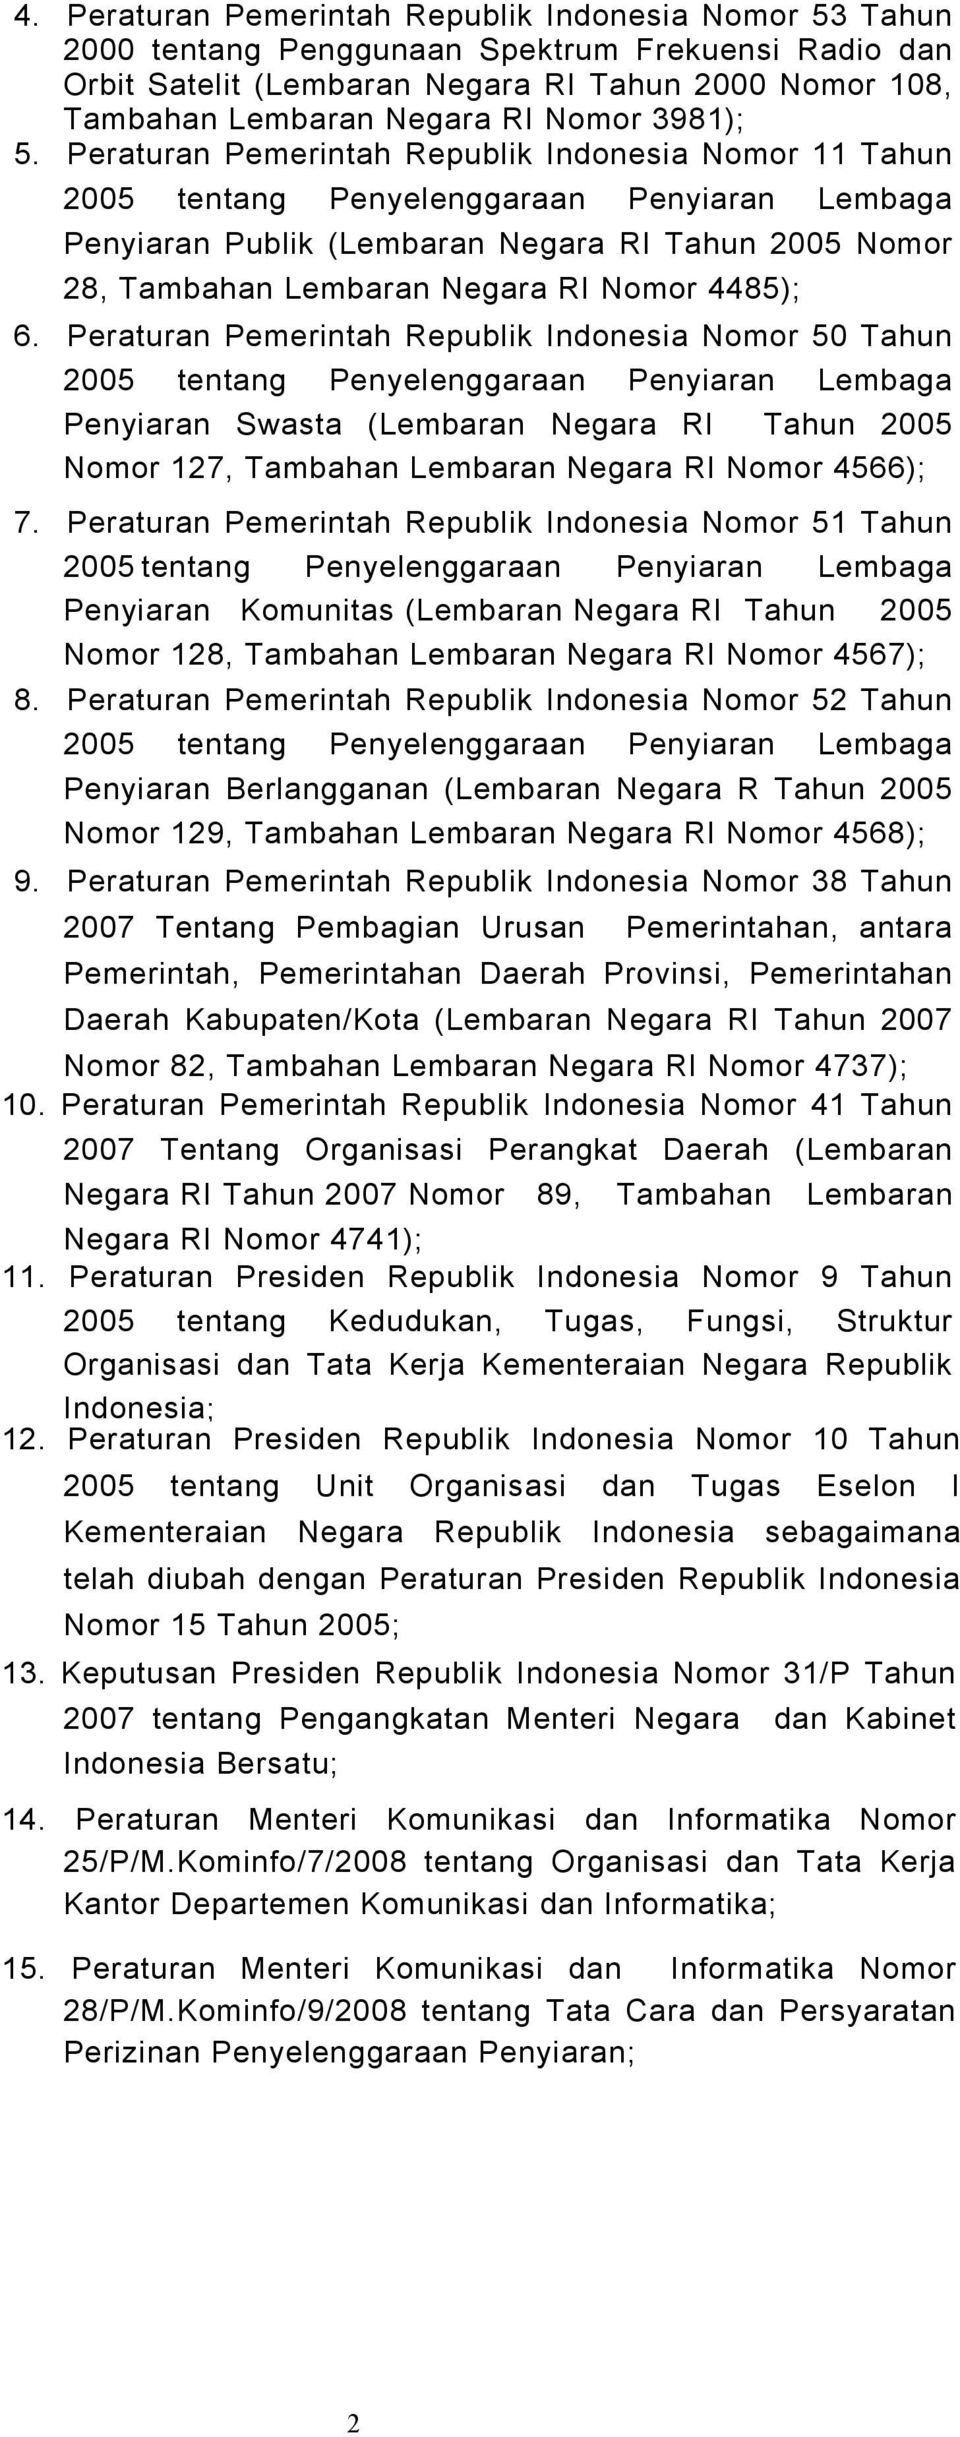 Peraturan Pemerintah Republik Indonesia Nomor 11 Tahun 2005 tentang Penyelenggaraan Penyiaran Lembaga Penyiaran Publik (Lembaran Negara RI Tahun 2005 Nomor 28, Tambahan Lembaran Negara RI Nomor